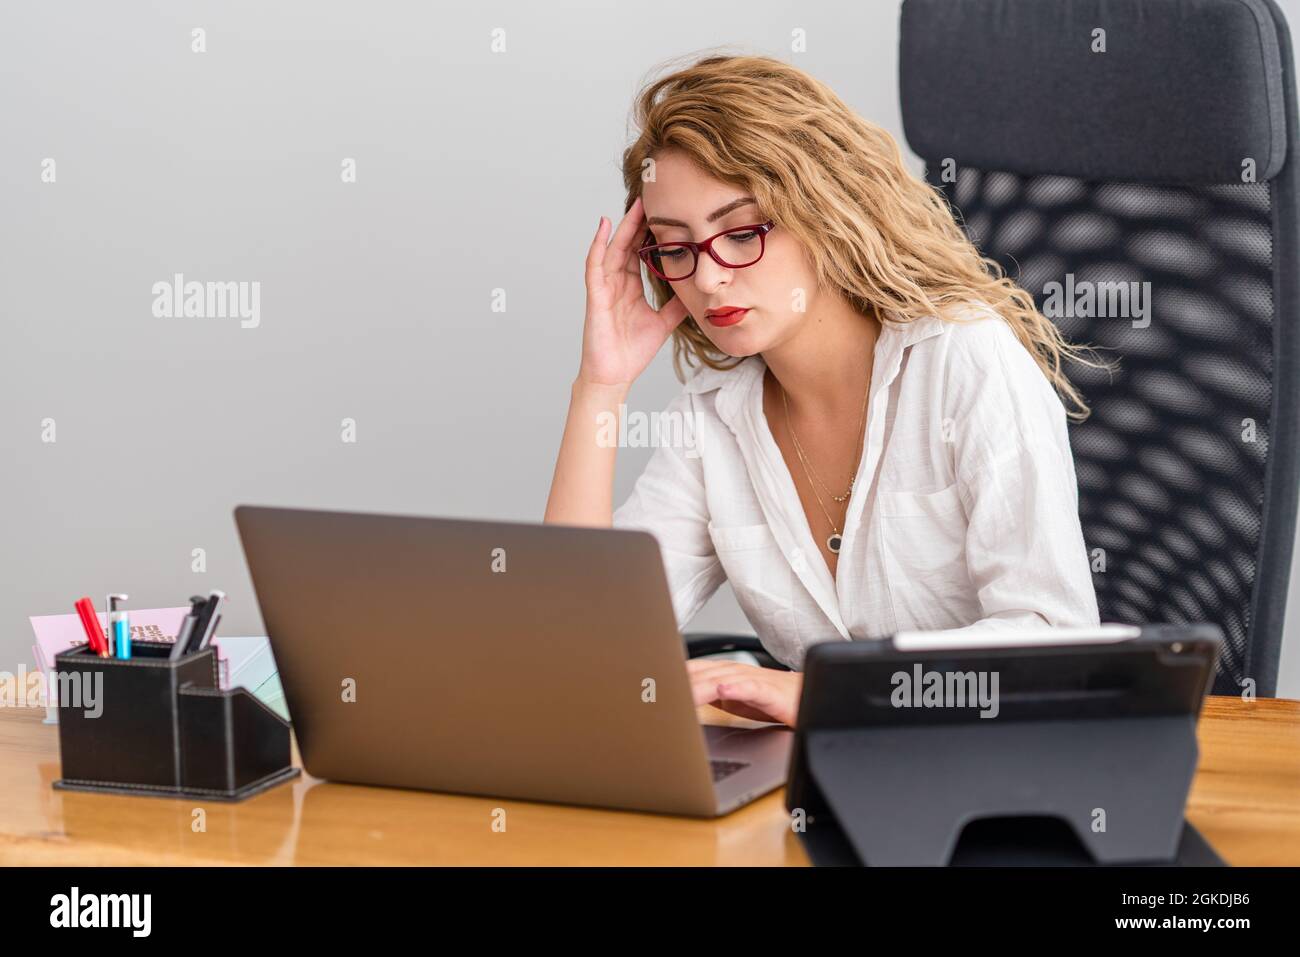 La mujer joven trabaja duro en su oficina y se ocupa de los prblems, con equipo moderno. Fotografías de alta calidad Foto de stock